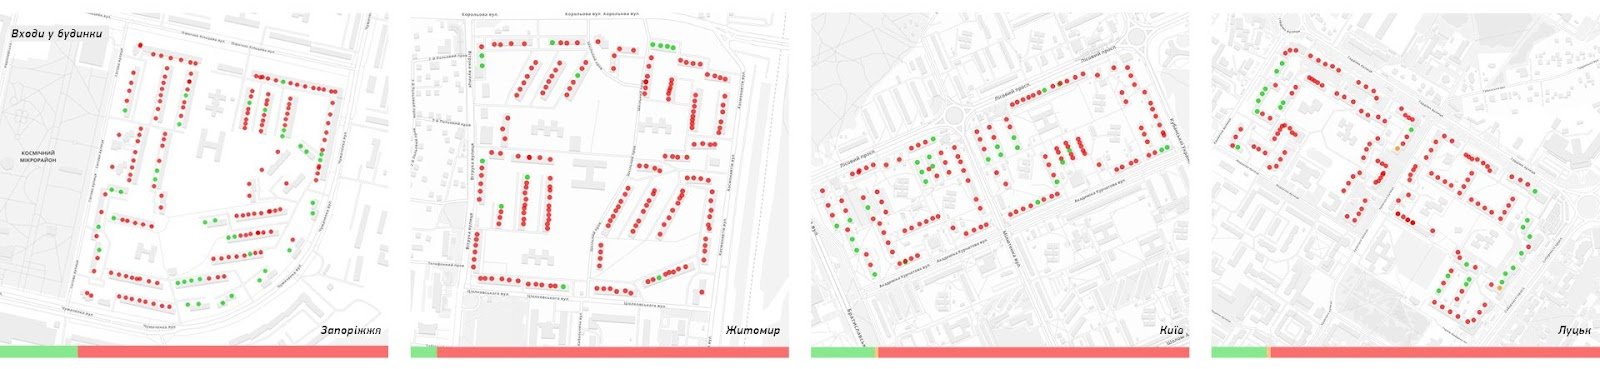 Червоними крапками на картах мікрорайонів позначені недоступні входи в будинки і заклади